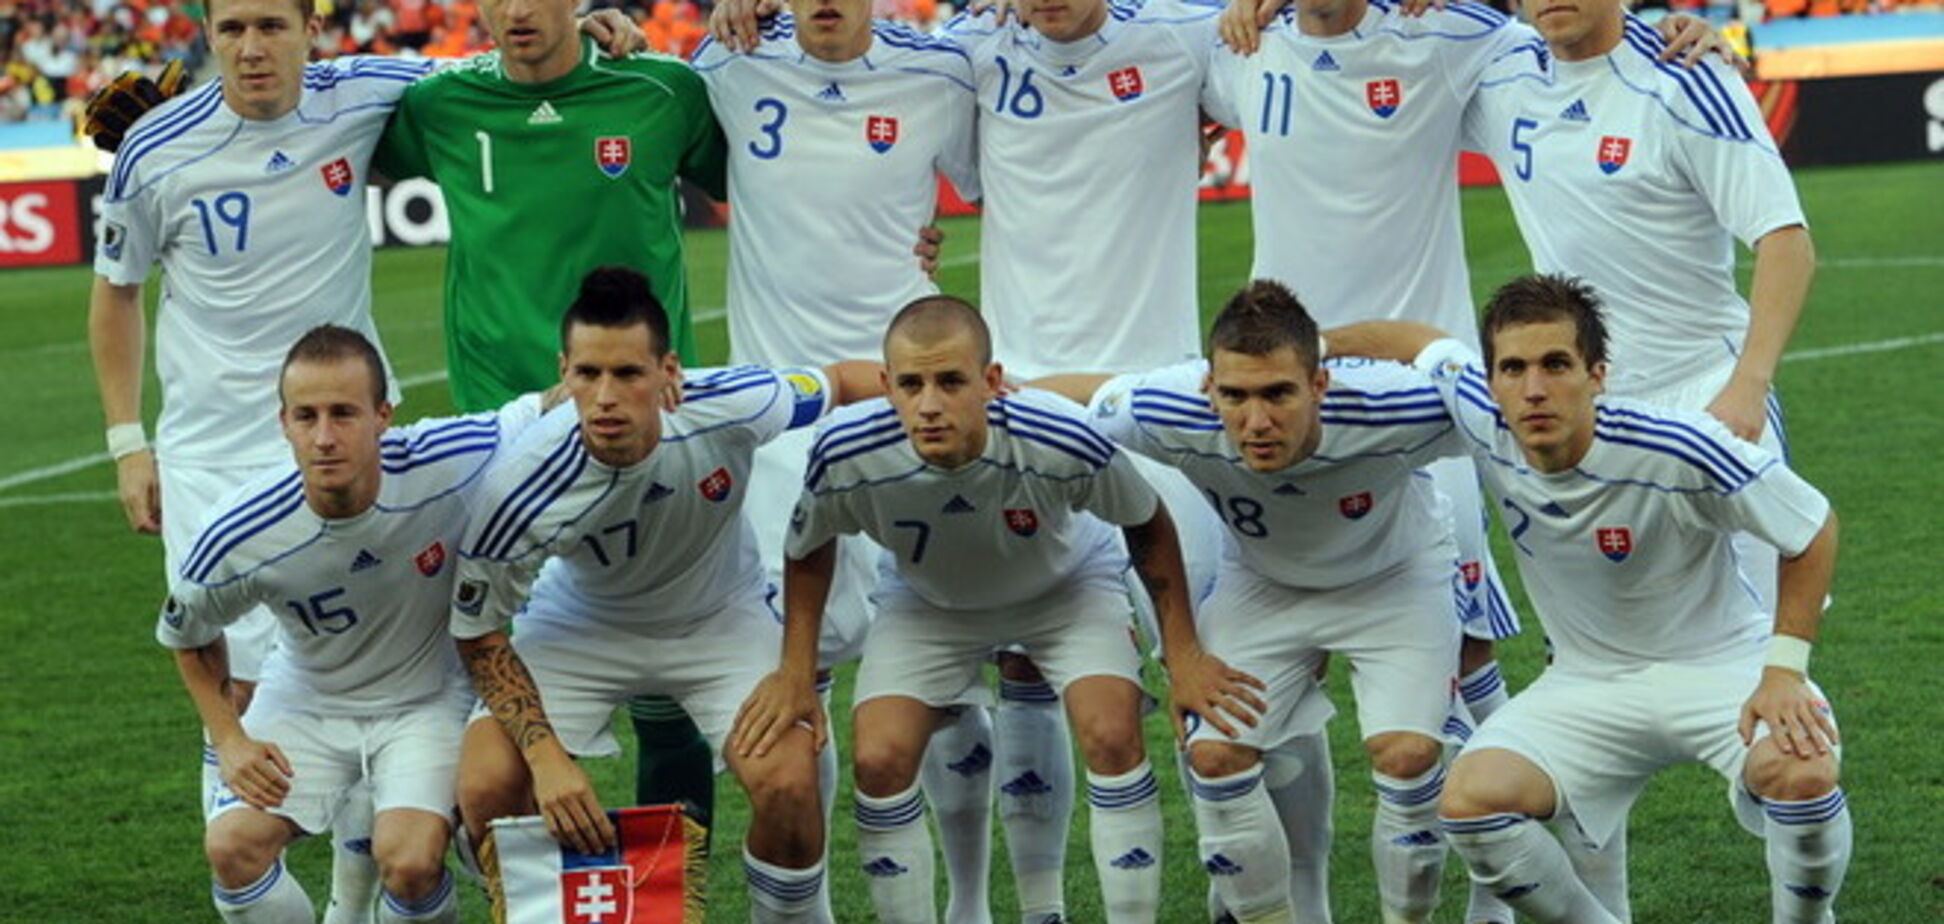 Словацкий конвой. Главное о нашем первом сопернике в отборе на Евро-2016 